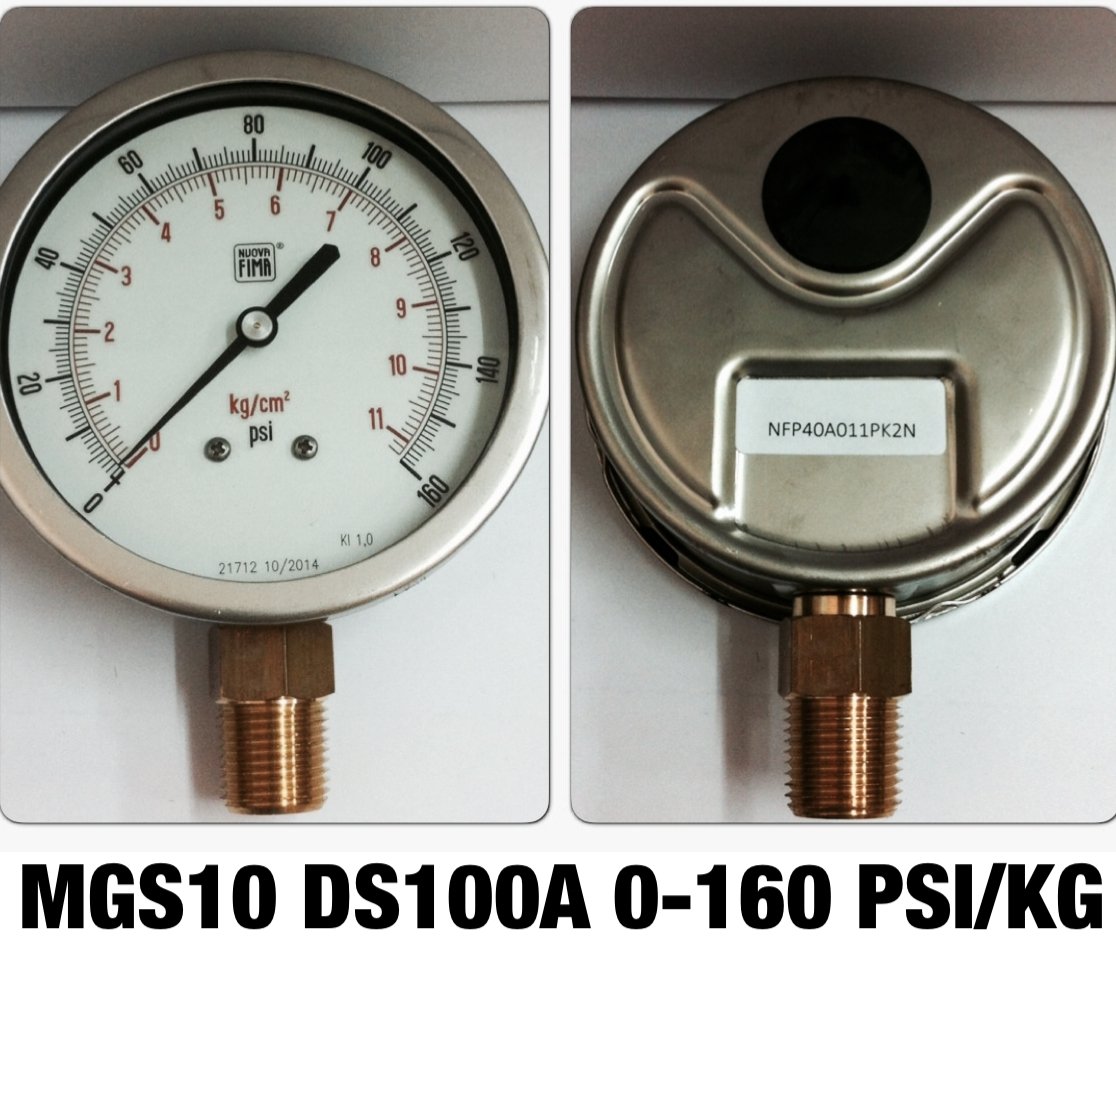 เกจ์วัดความดัน 4 นิ้ว 0-11 Kg/cm2 (0-160PSI) ออกล่าง 1/2" ทองเหลือง NPT , MGS10 DS100A NUOVAFIMA Pressure Gauge Made in ITALY @ ราคา